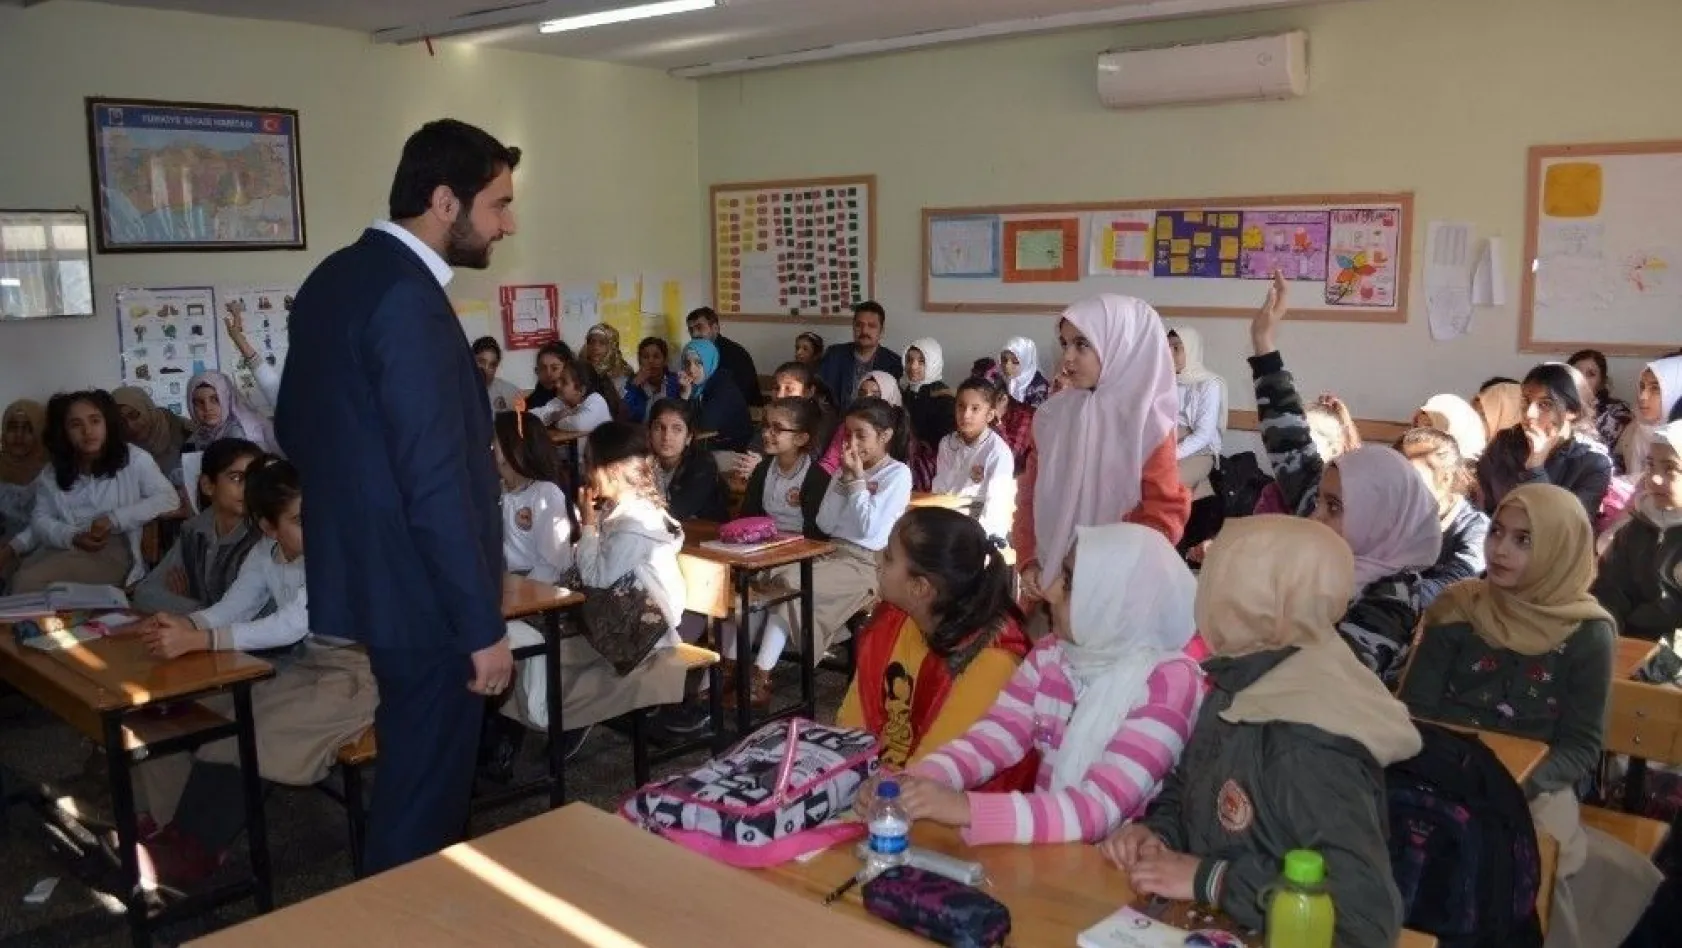 Mustafa Hayri Efendi İmam Hatip Ortaokulunda Yaşama Yol Ver projesi tanıtıldı
